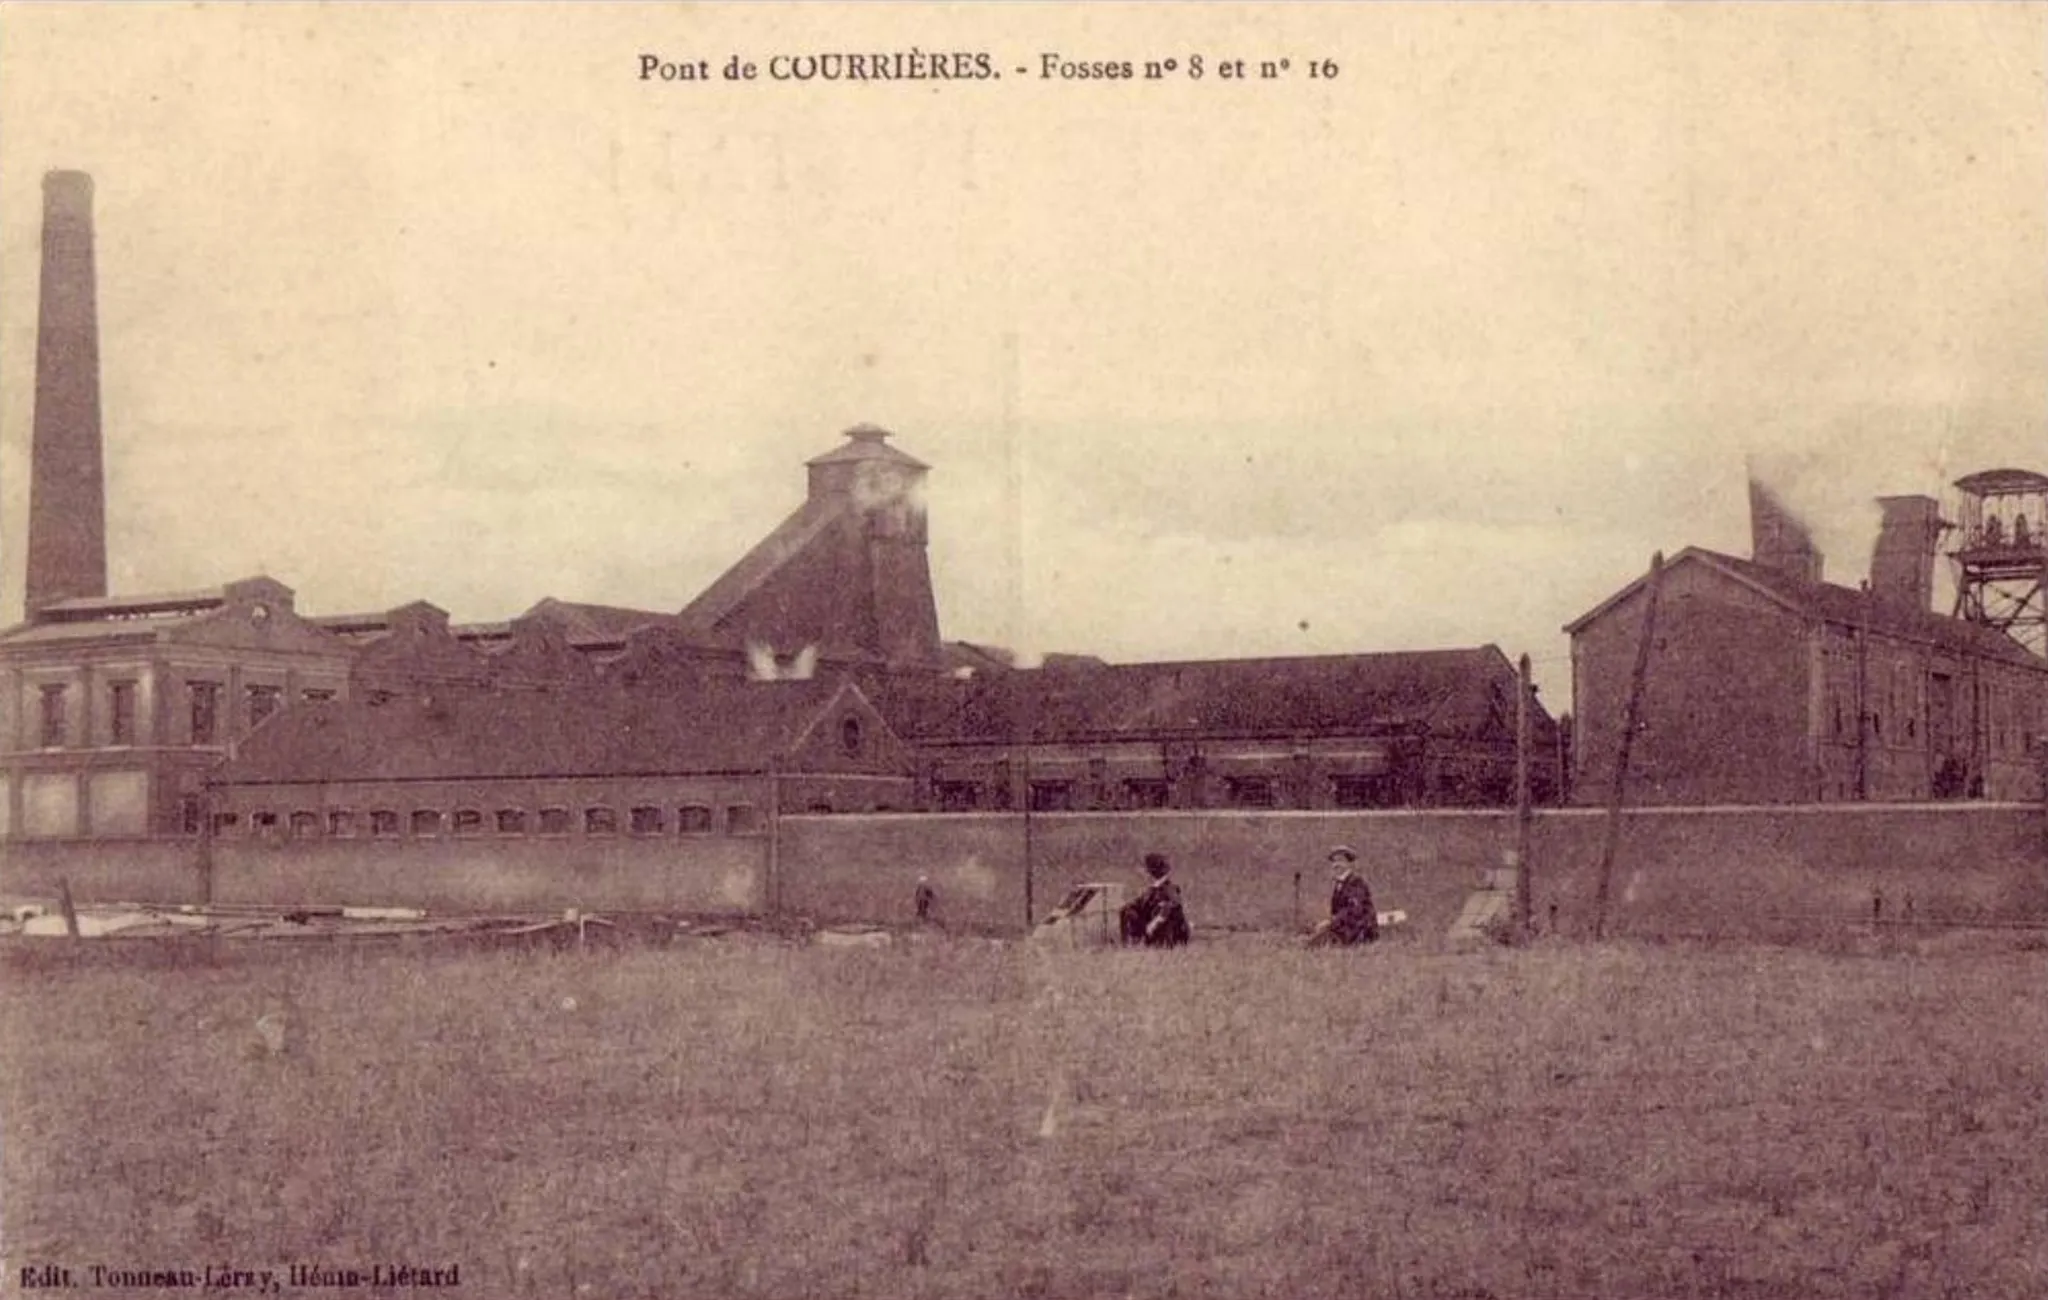 Photo showing: La fosse n° 8 - 16 dite Gabriel Portier de la Compagnie des mines de Courrières était un charbonnage constitué de deux puits situé à Courrières, Pas-de-Calais, Nord-Pas-de-Calais, France.